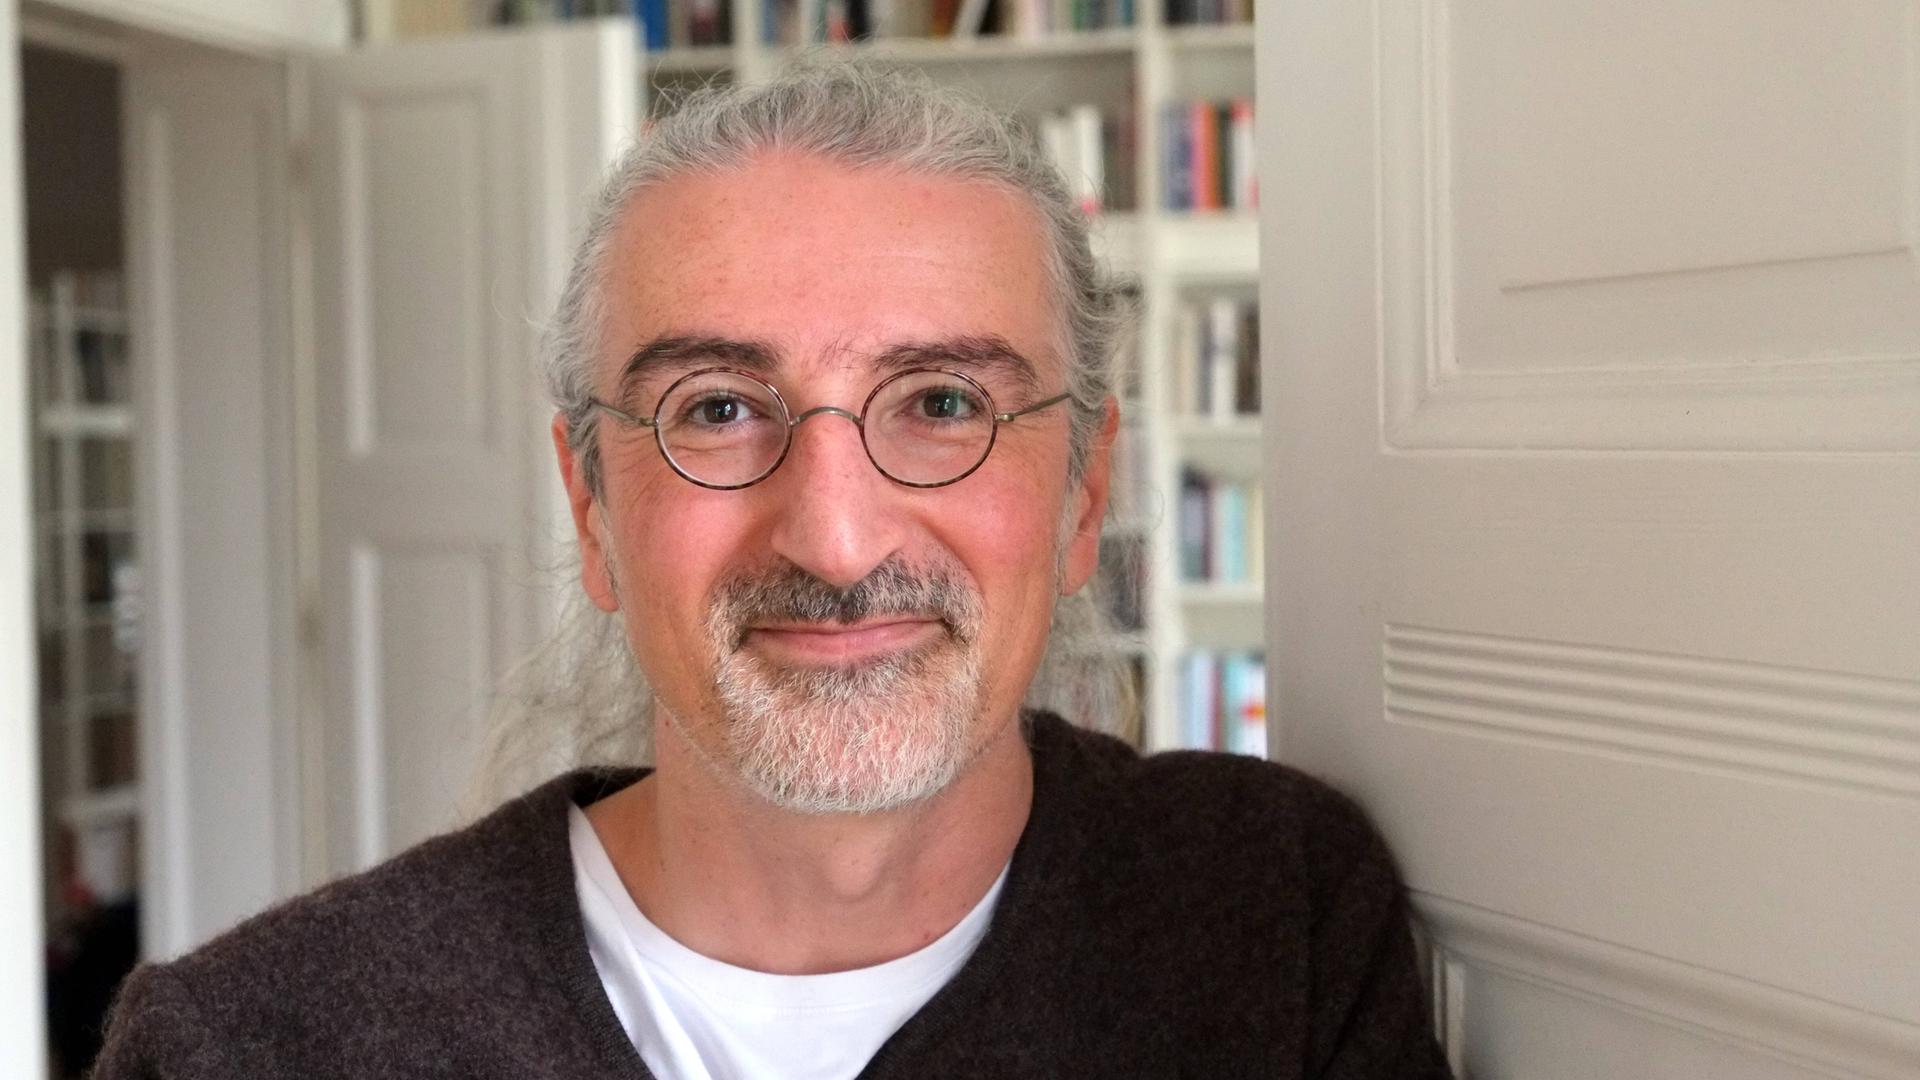 Porträtfoto des Schriftstellers Zoran Drvenkar, im Hintergrund sind weißgestrichene Türen und Bücherregale zu sehen. 